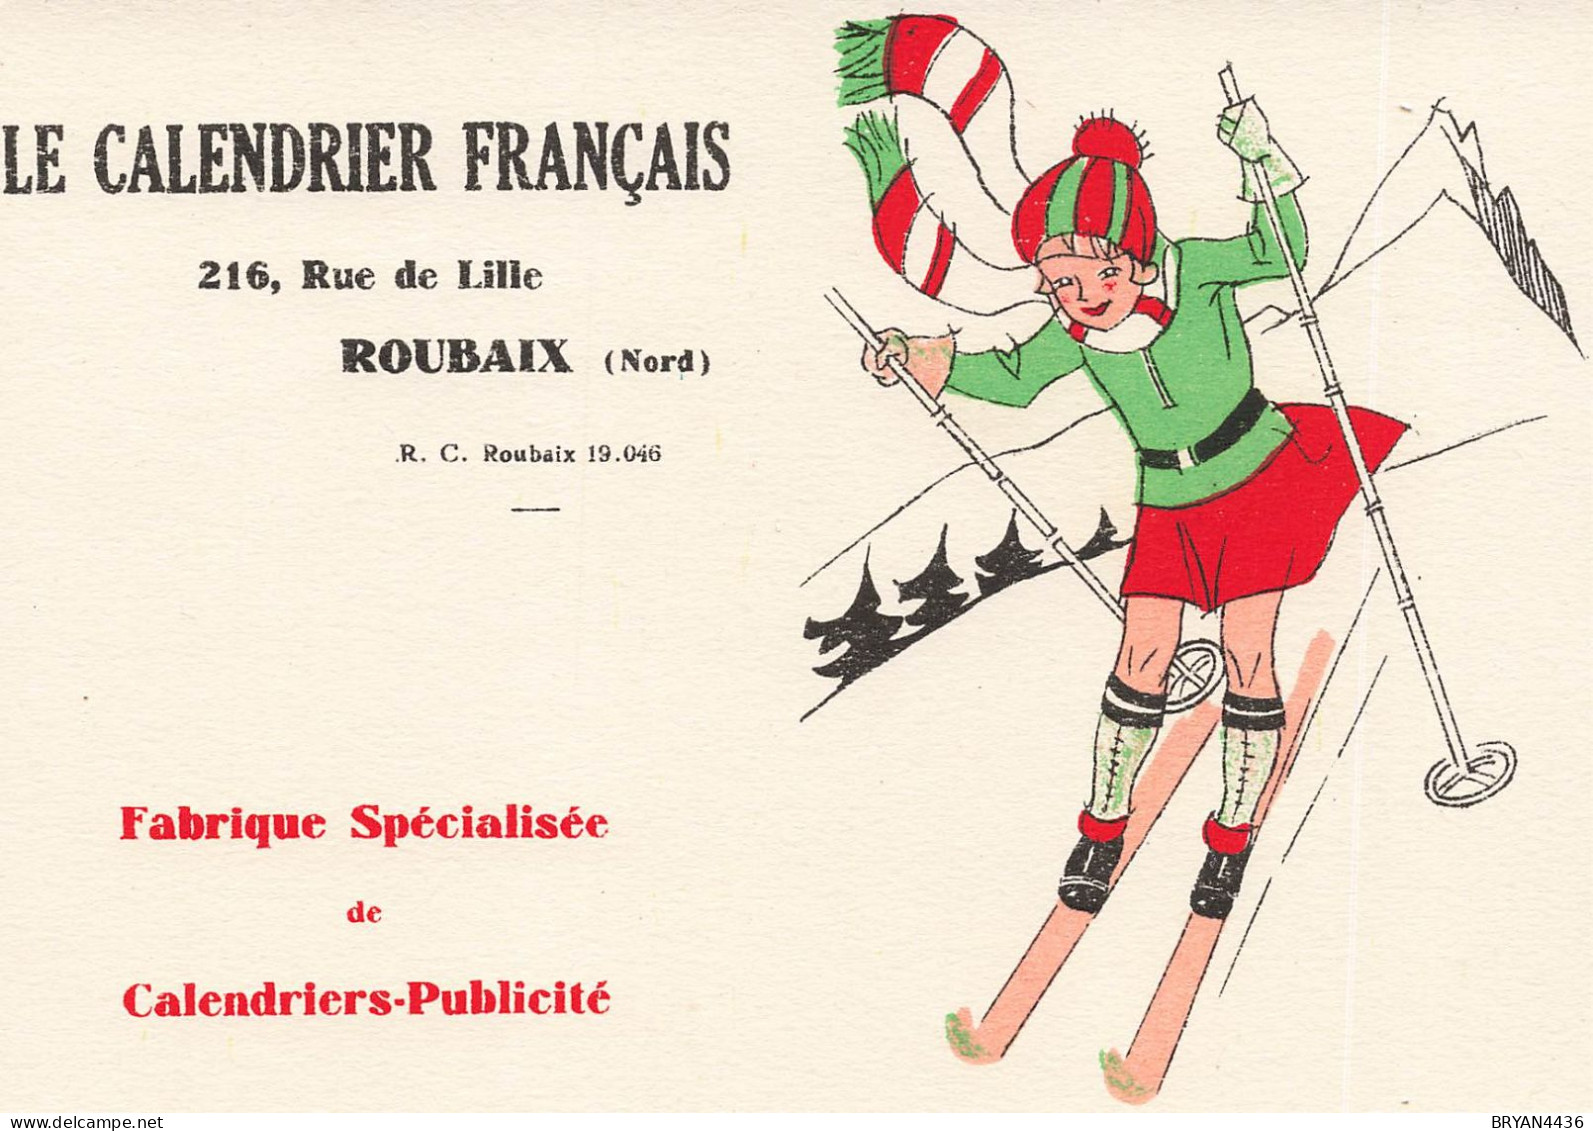 59 - ROUBAIX - ENTREPRISE - "LE CALENDRIER FRANCAIS" - 216, Ruede LILLE - BUVARD (14x16cm) - Kleding & Textiel